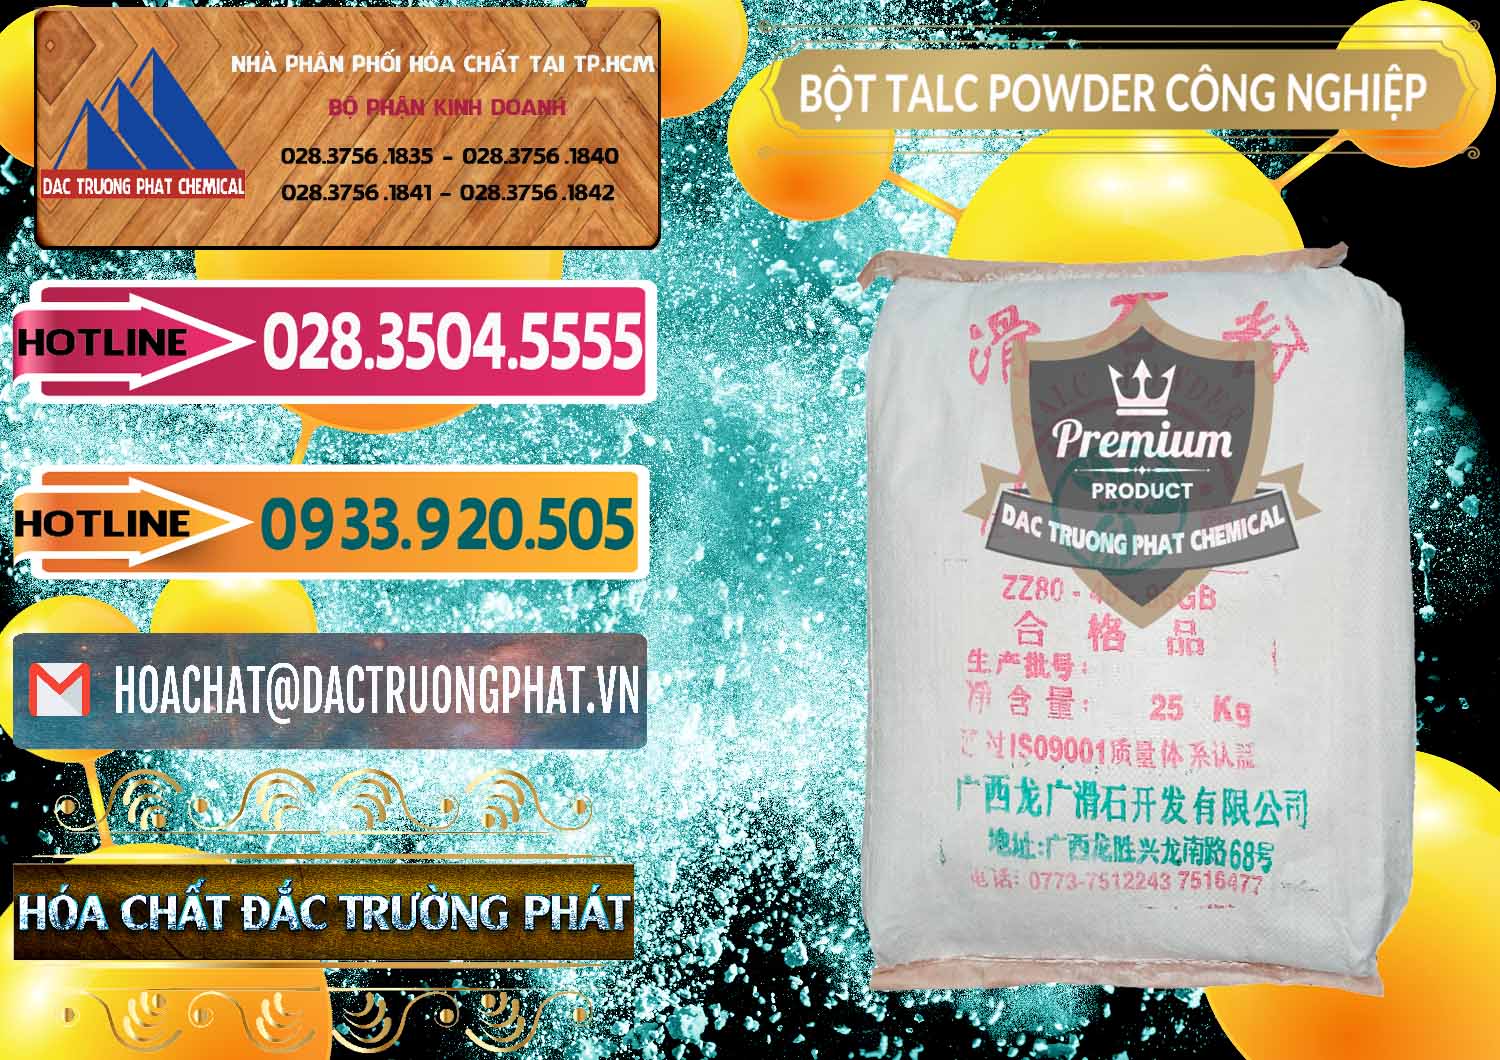 Nơi nhập khẩu & bán Bột Talc Powder Công Nghiệp Trung Quốc China - 0037 - Công ty phân phối _ cung ứng hóa chất tại TP.HCM - dactruongphat.vn